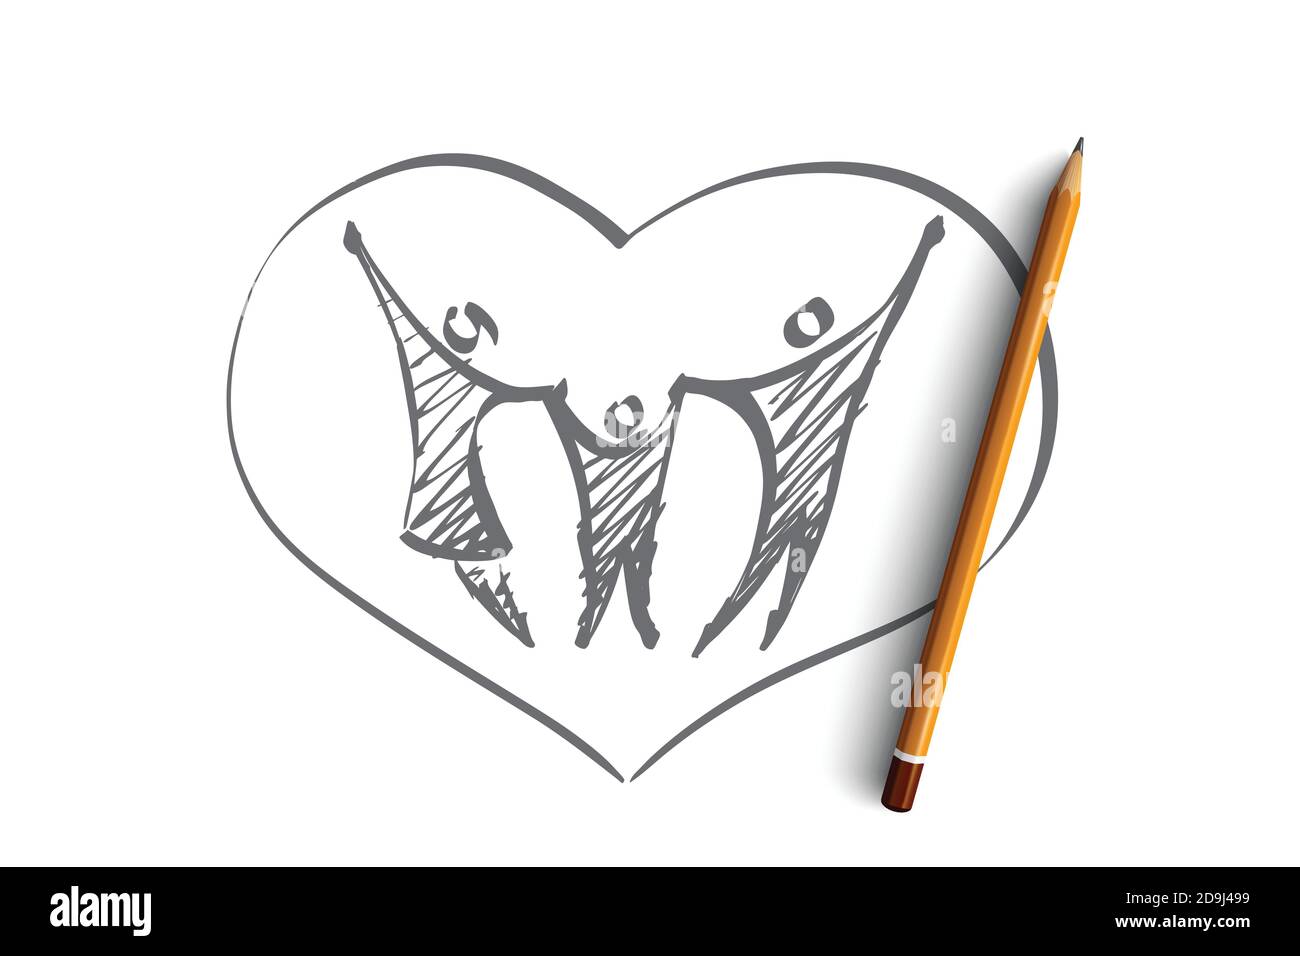 Disegno vettoriale del concetto di cuore di famiglia disegnato a mano con una matita sopra di esso. Padre, madre e bambino si tengono a vicenda con mani sollevate nel cuore Illustrazione Vettoriale